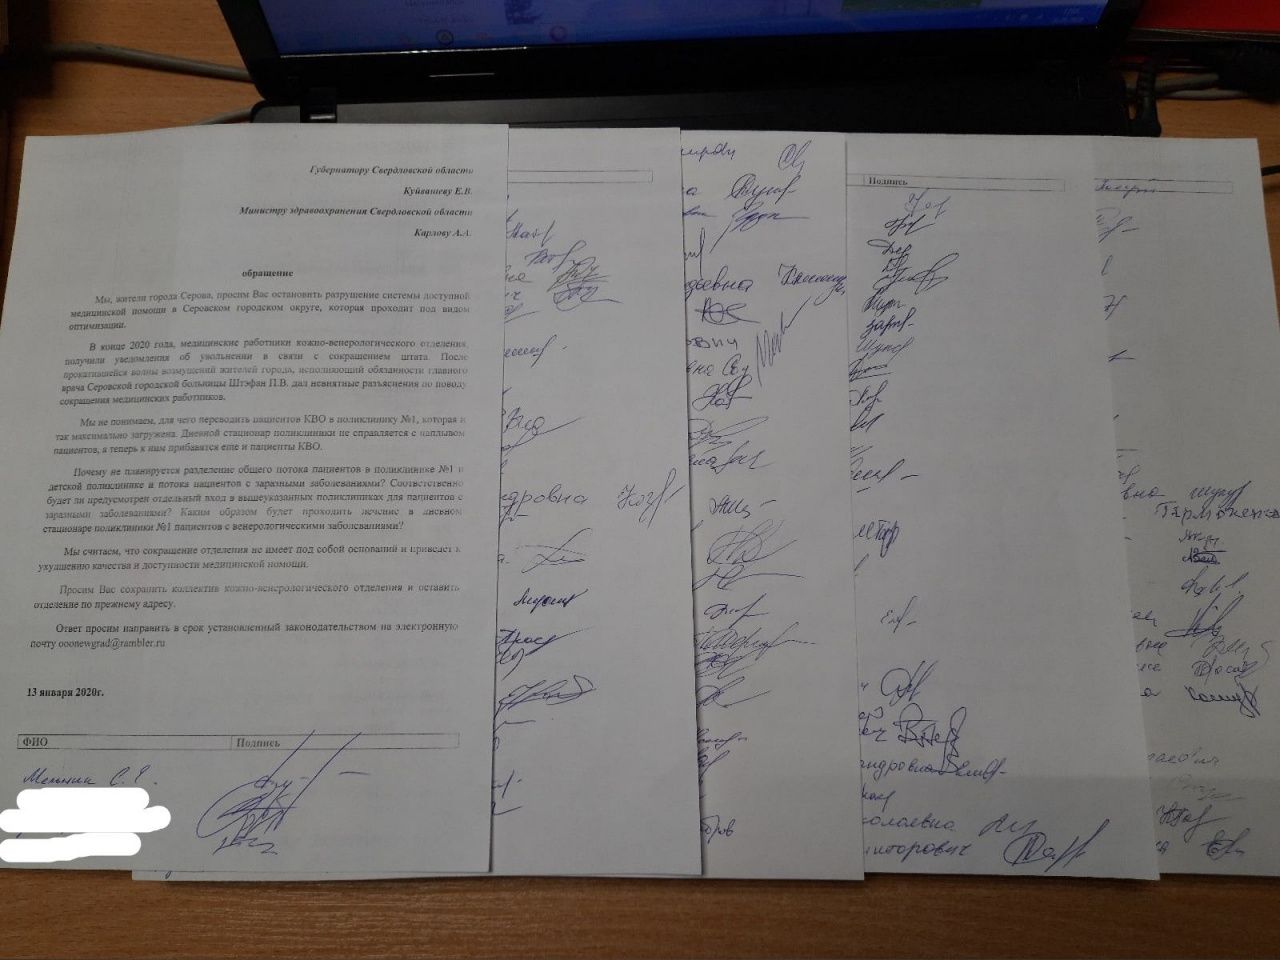 Более сотни серовчан подписалось под обращением в защиту кожно-венерологического отделения. Подписи отправлены губернатору и министру здравоохранения